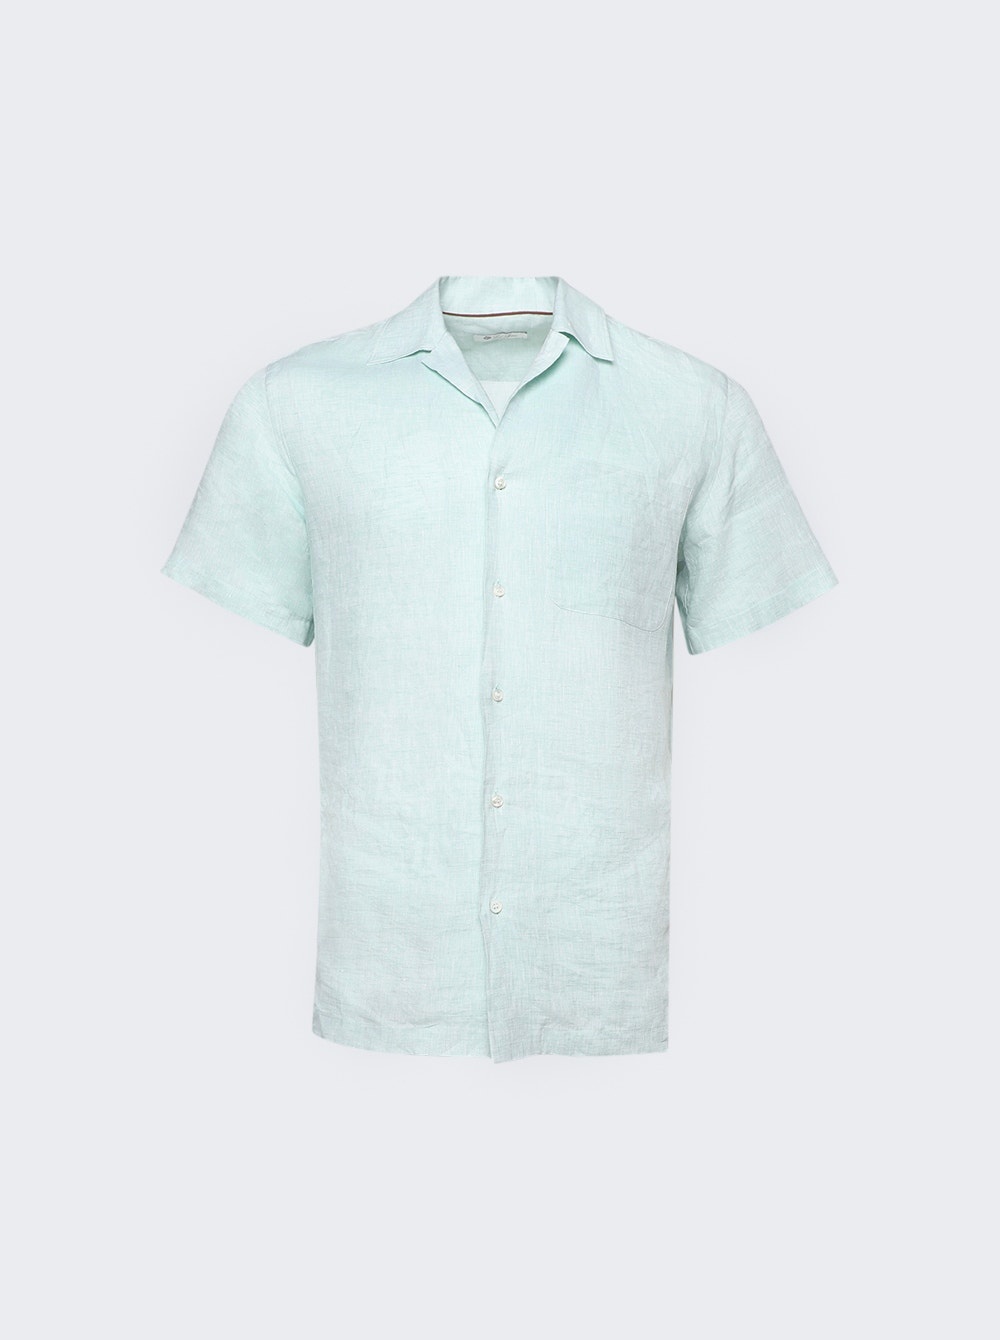 Tindaro Solaire Shirt Transparent Water - 1